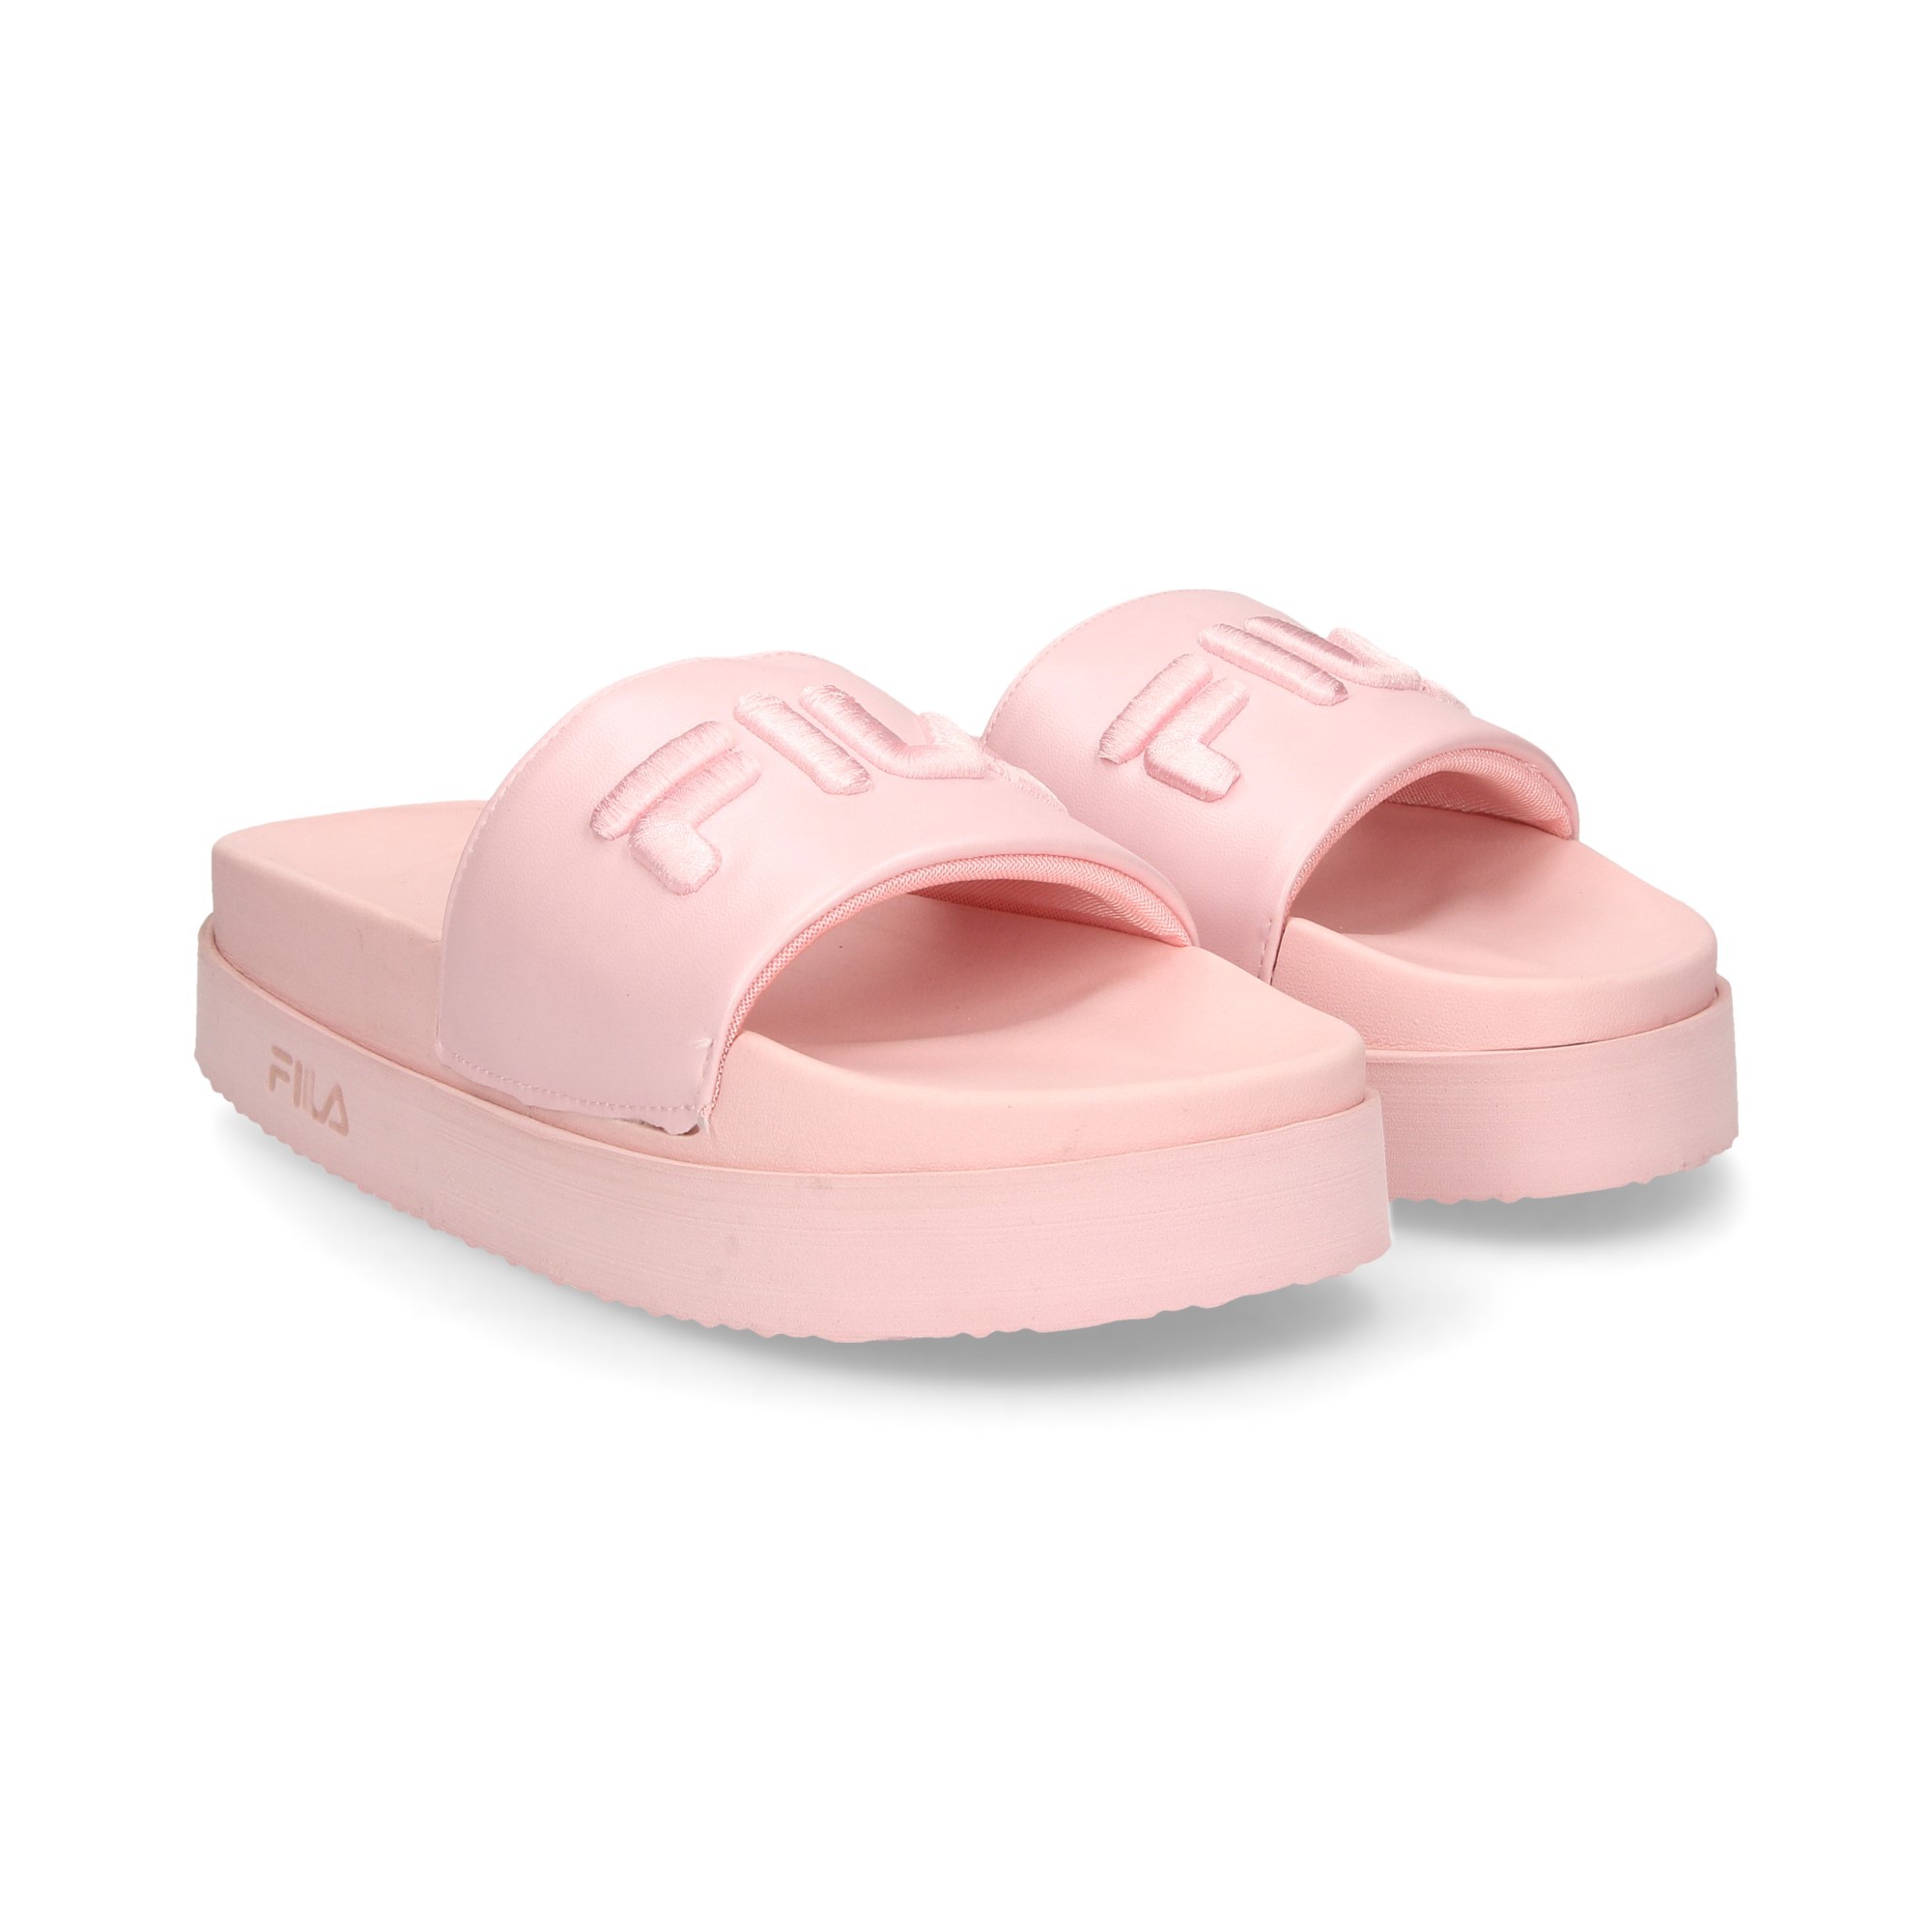 Buy > fila platform sandal > in stock